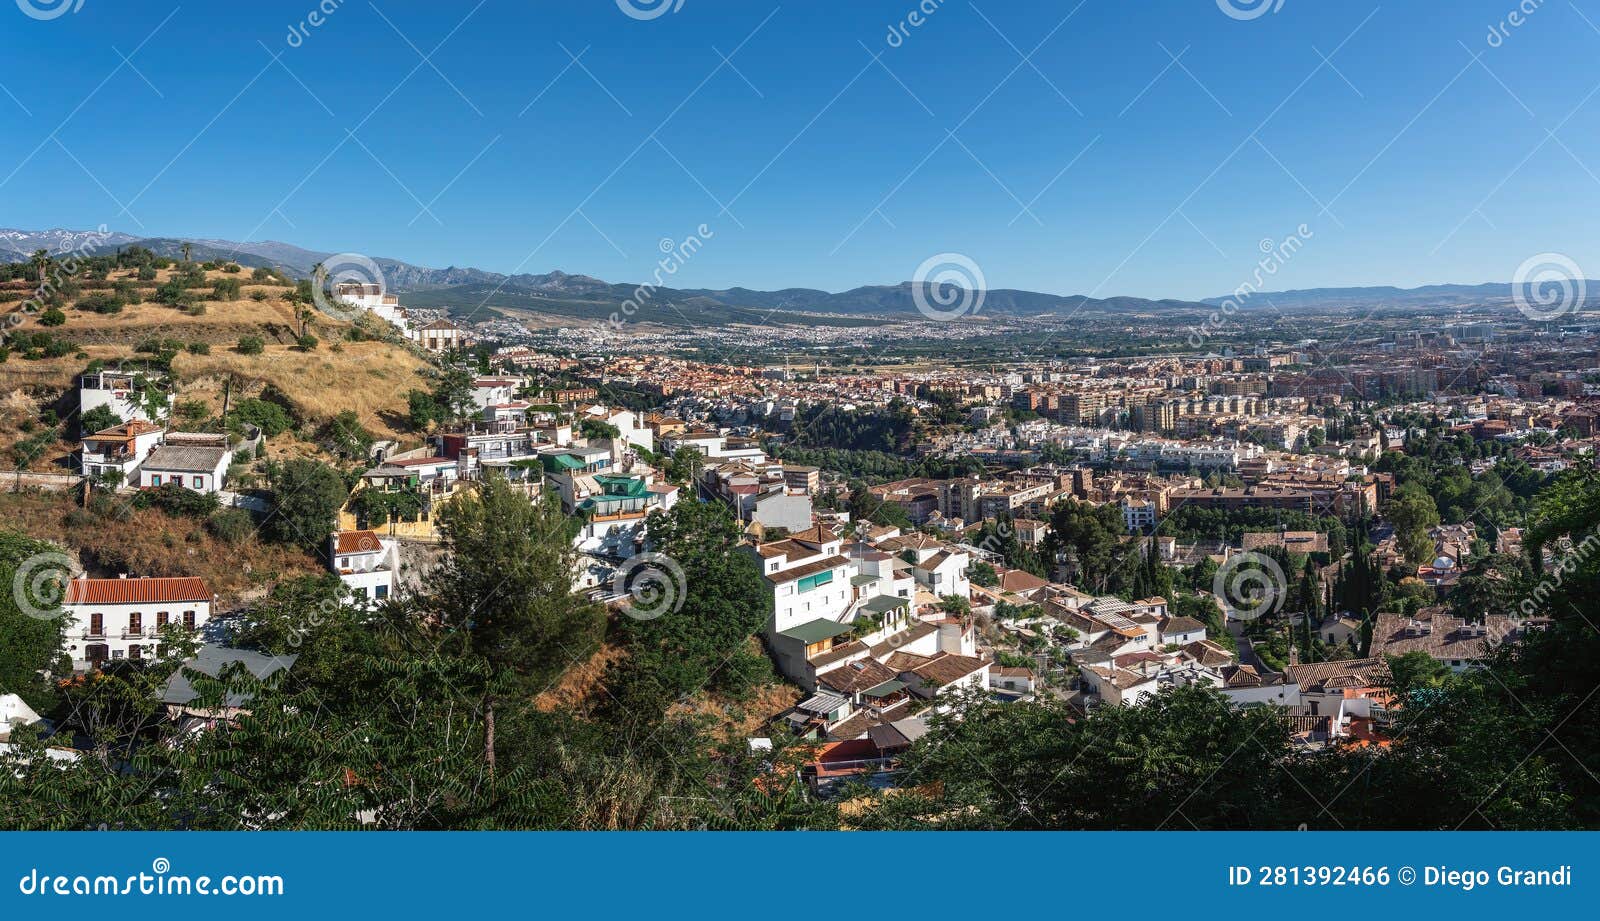 aerial view of granada with barranco del abogado hill - granada, andalusia, spain